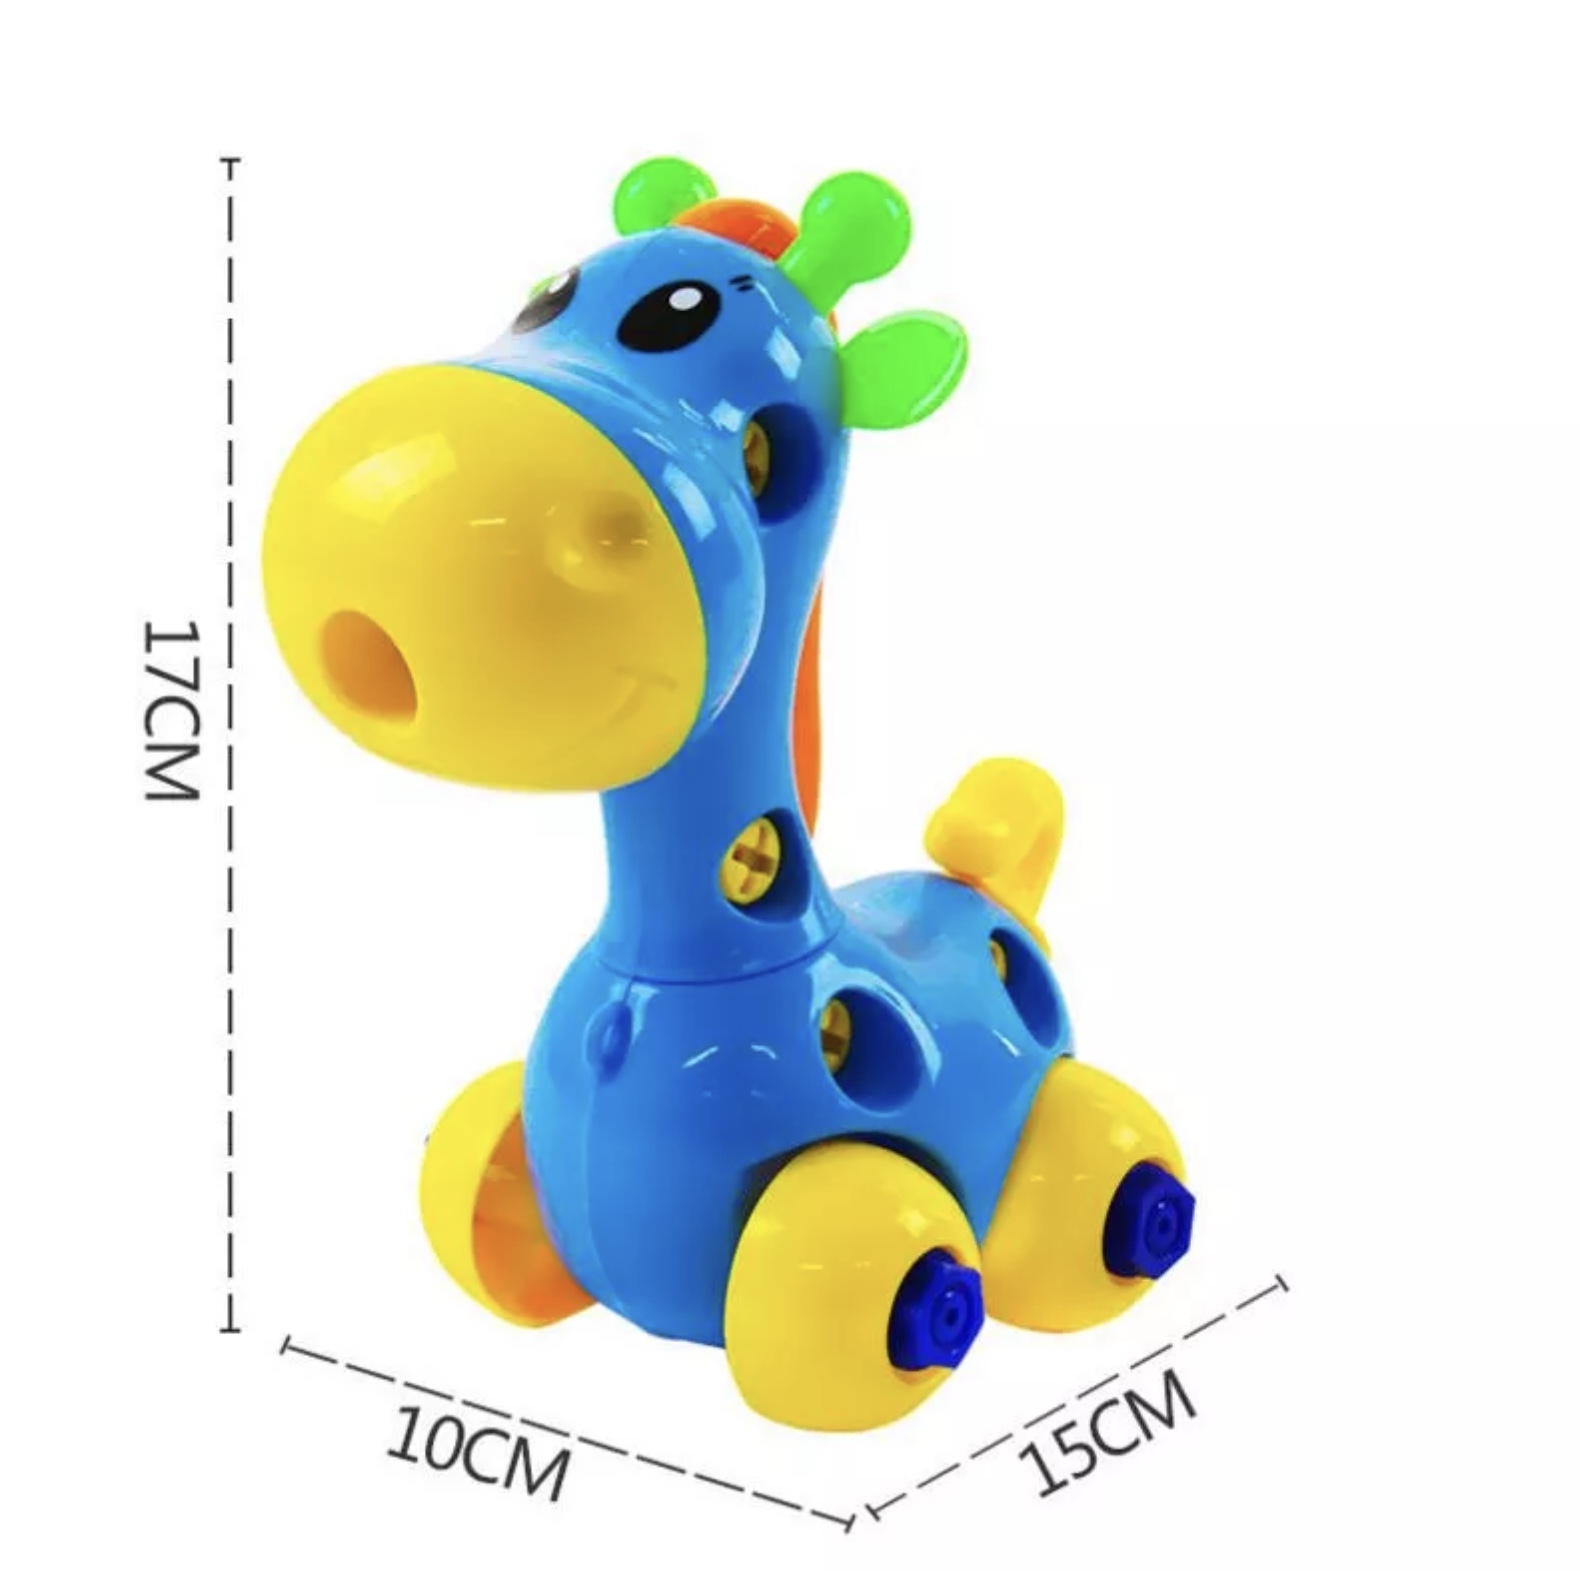 Puzzle din plastic de tip girafă pentru copii de vârsta de doi ani + 1 produs non toxic indicat copiilor care vor să desfacă și să refacă acest animal girafa